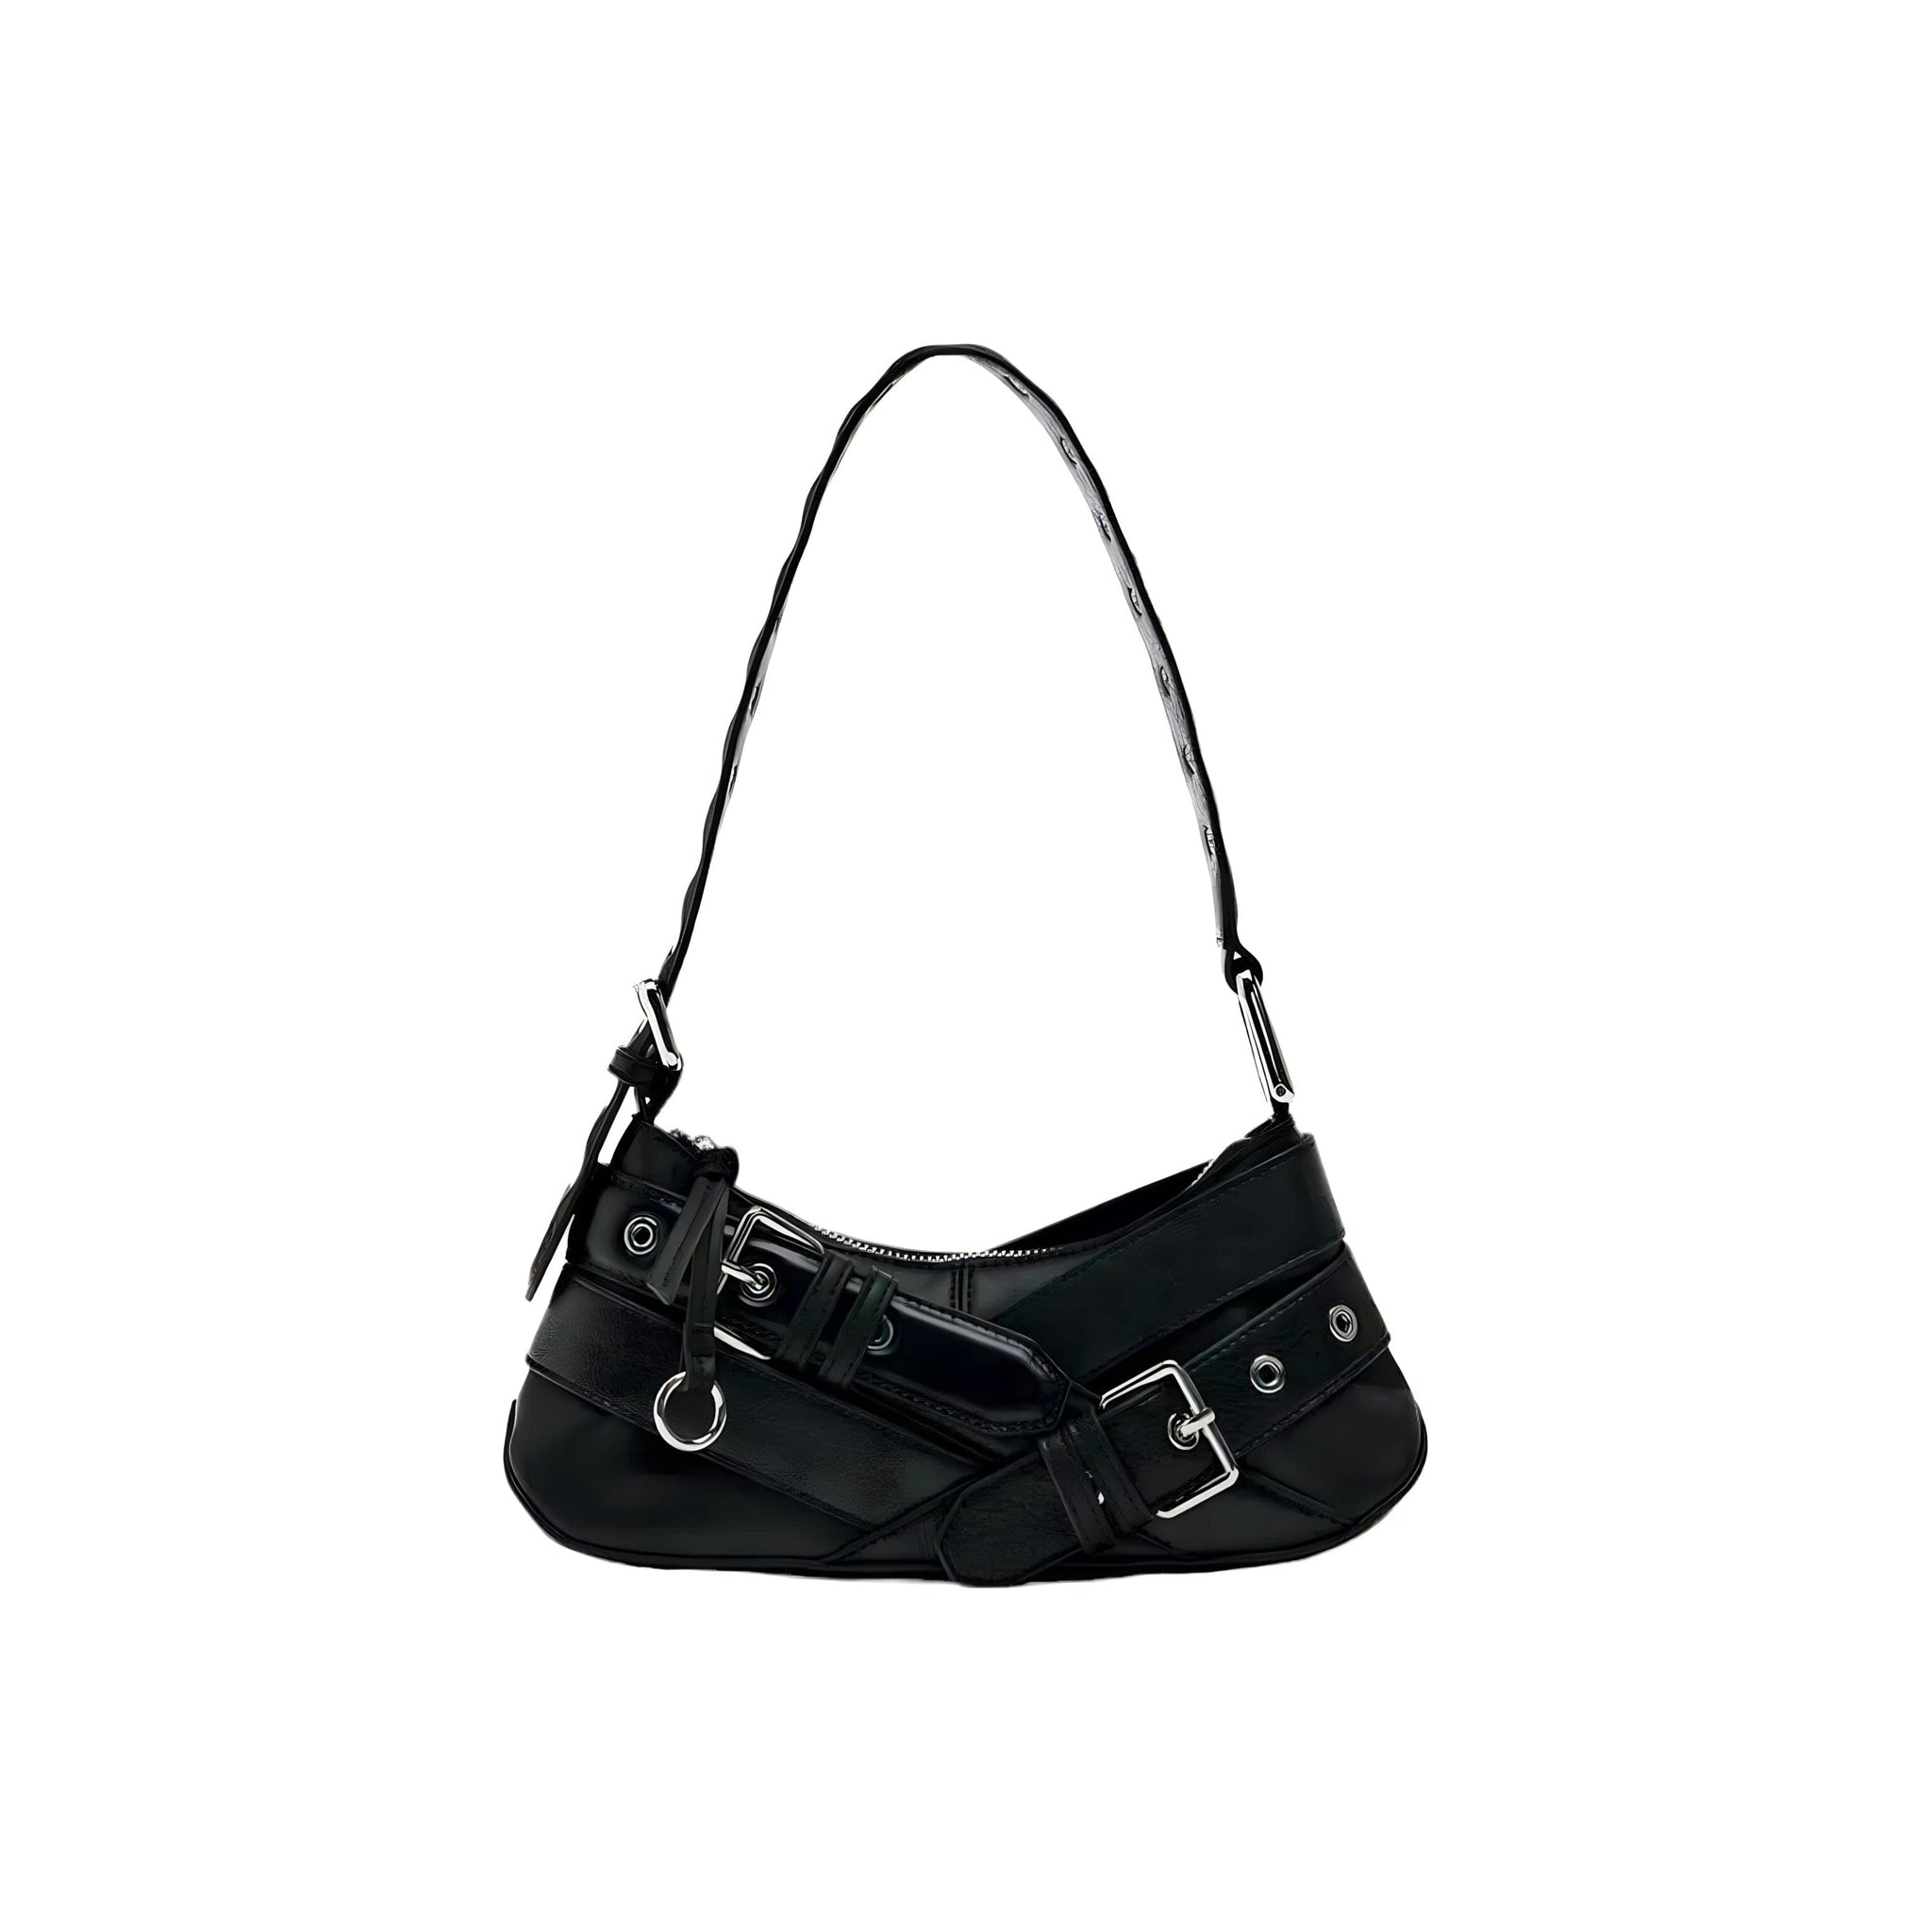 The Camella Leather Shoulder Bag - Multiple Colors SA Formal Black 